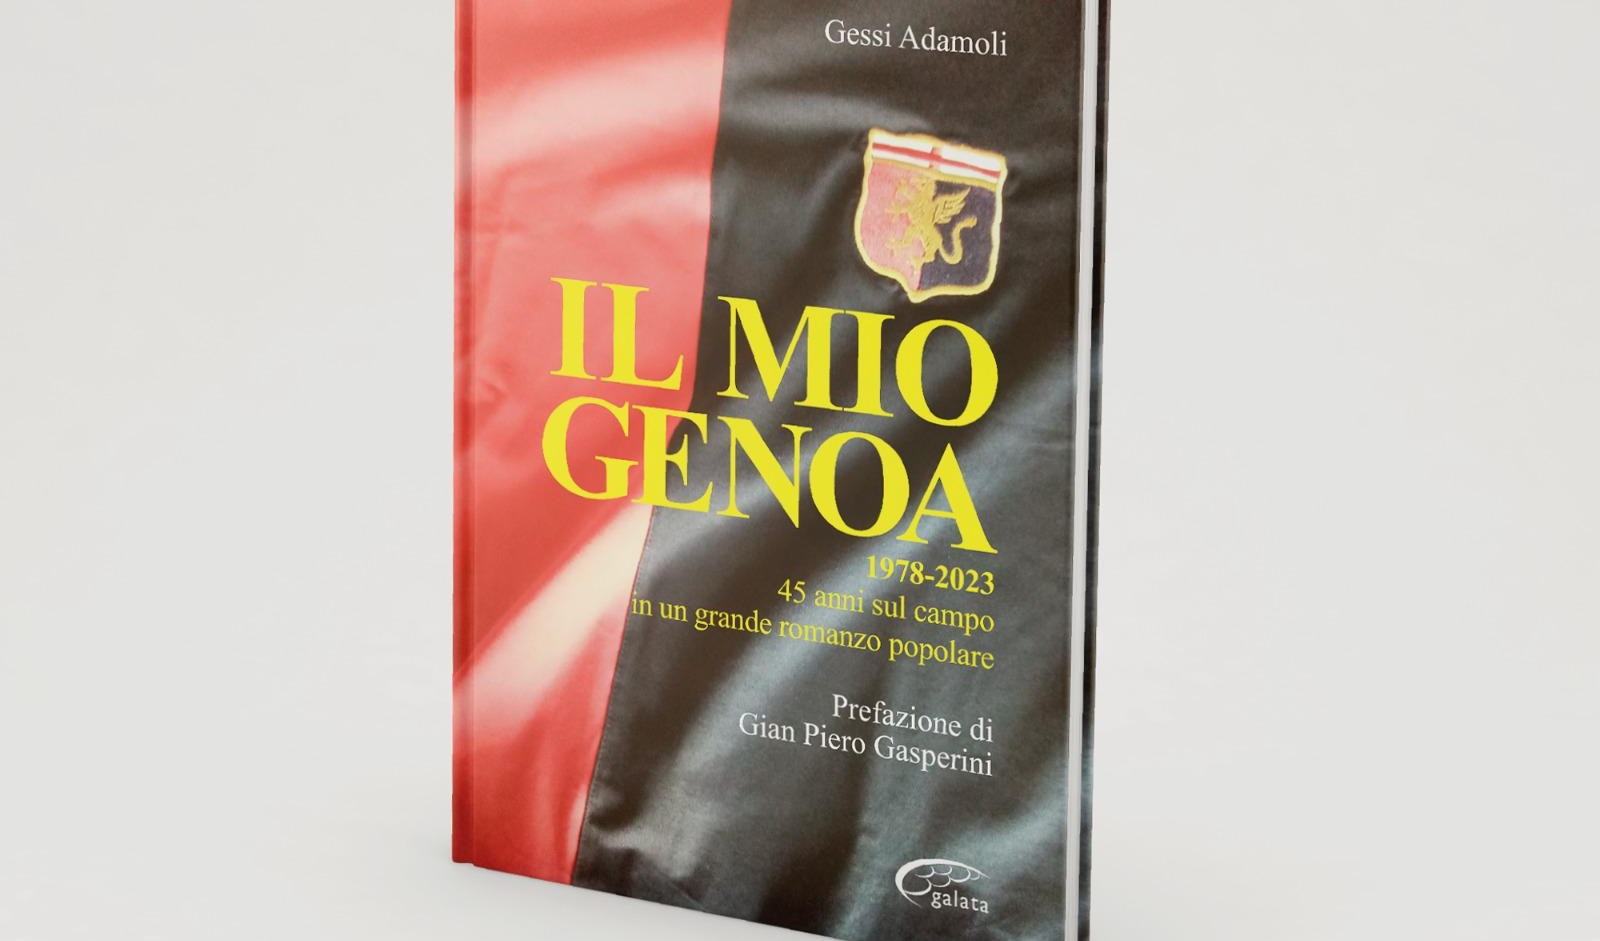 Ecco “Il mio Genoa” 45 anni in un libro rossoblù del giornalista Gessi Adamoli